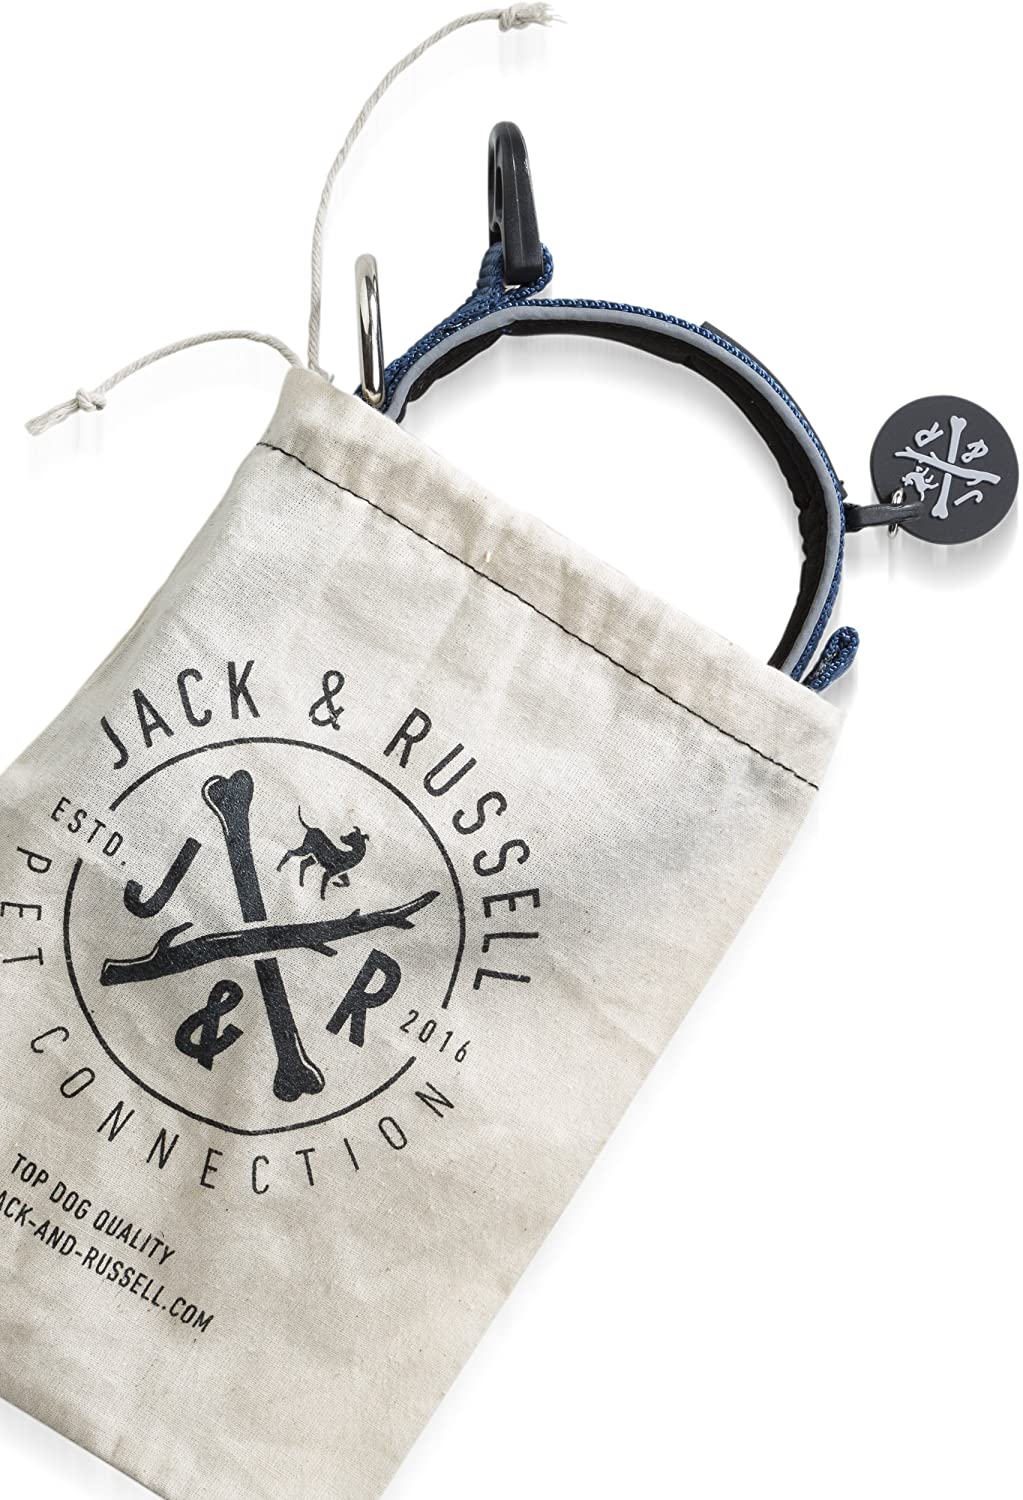  Jack & Russell Premium Collar de Perro Luna Reflectante y Neopreno Acolchado Collar de Perro Varios tamaños y Colores (Circunferencia del Cuello M (35-43 cm), Azul) 